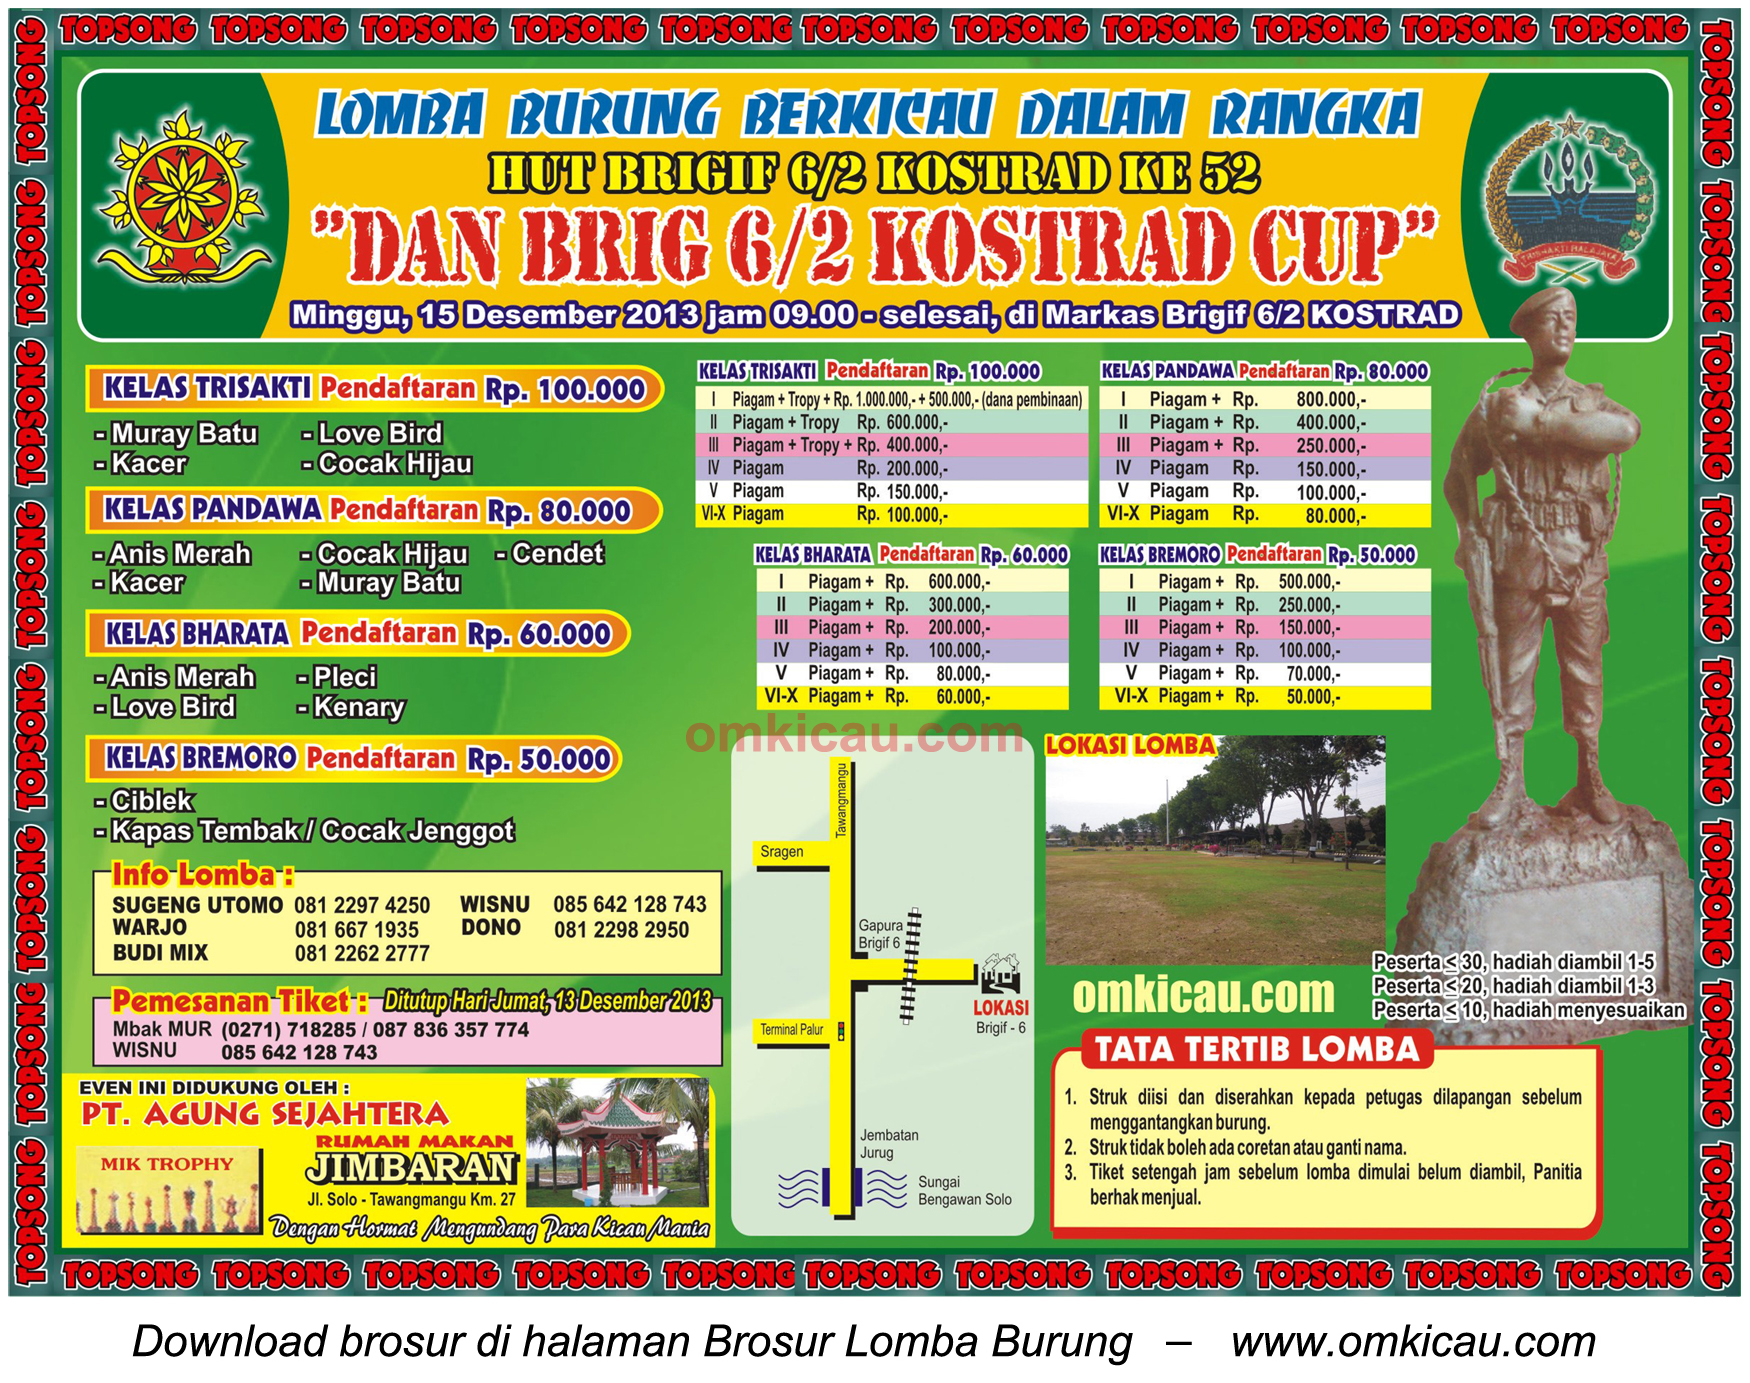 Brosur Lomba Burung Berkicau Dan Brig 6/2 Kostrad Cup, Solo, 15 Desember 2013